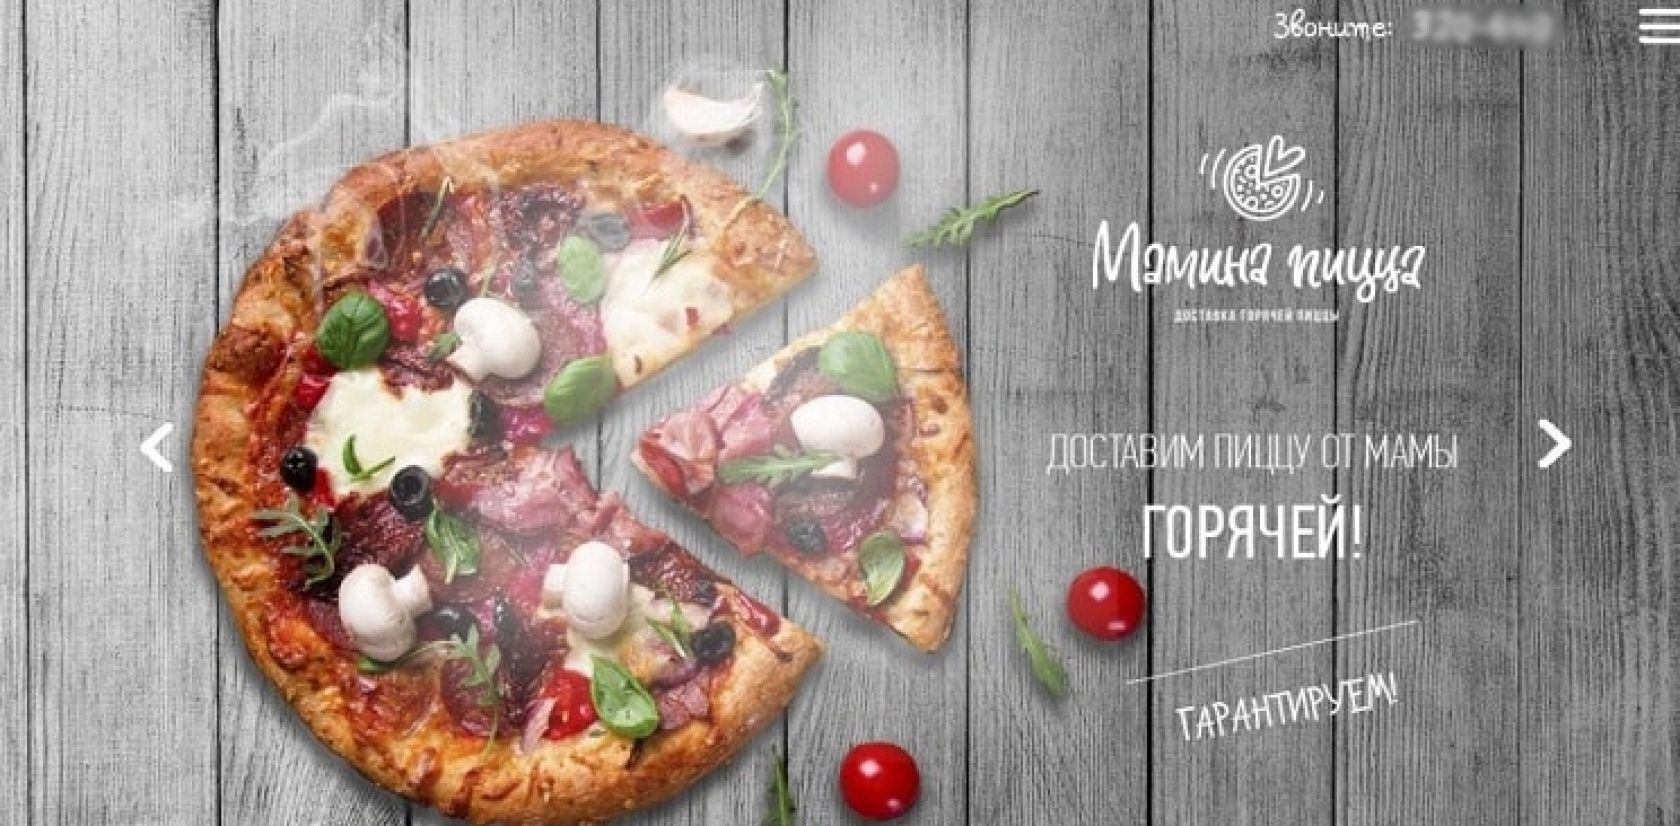 Реклама доставки пиццы с УТП